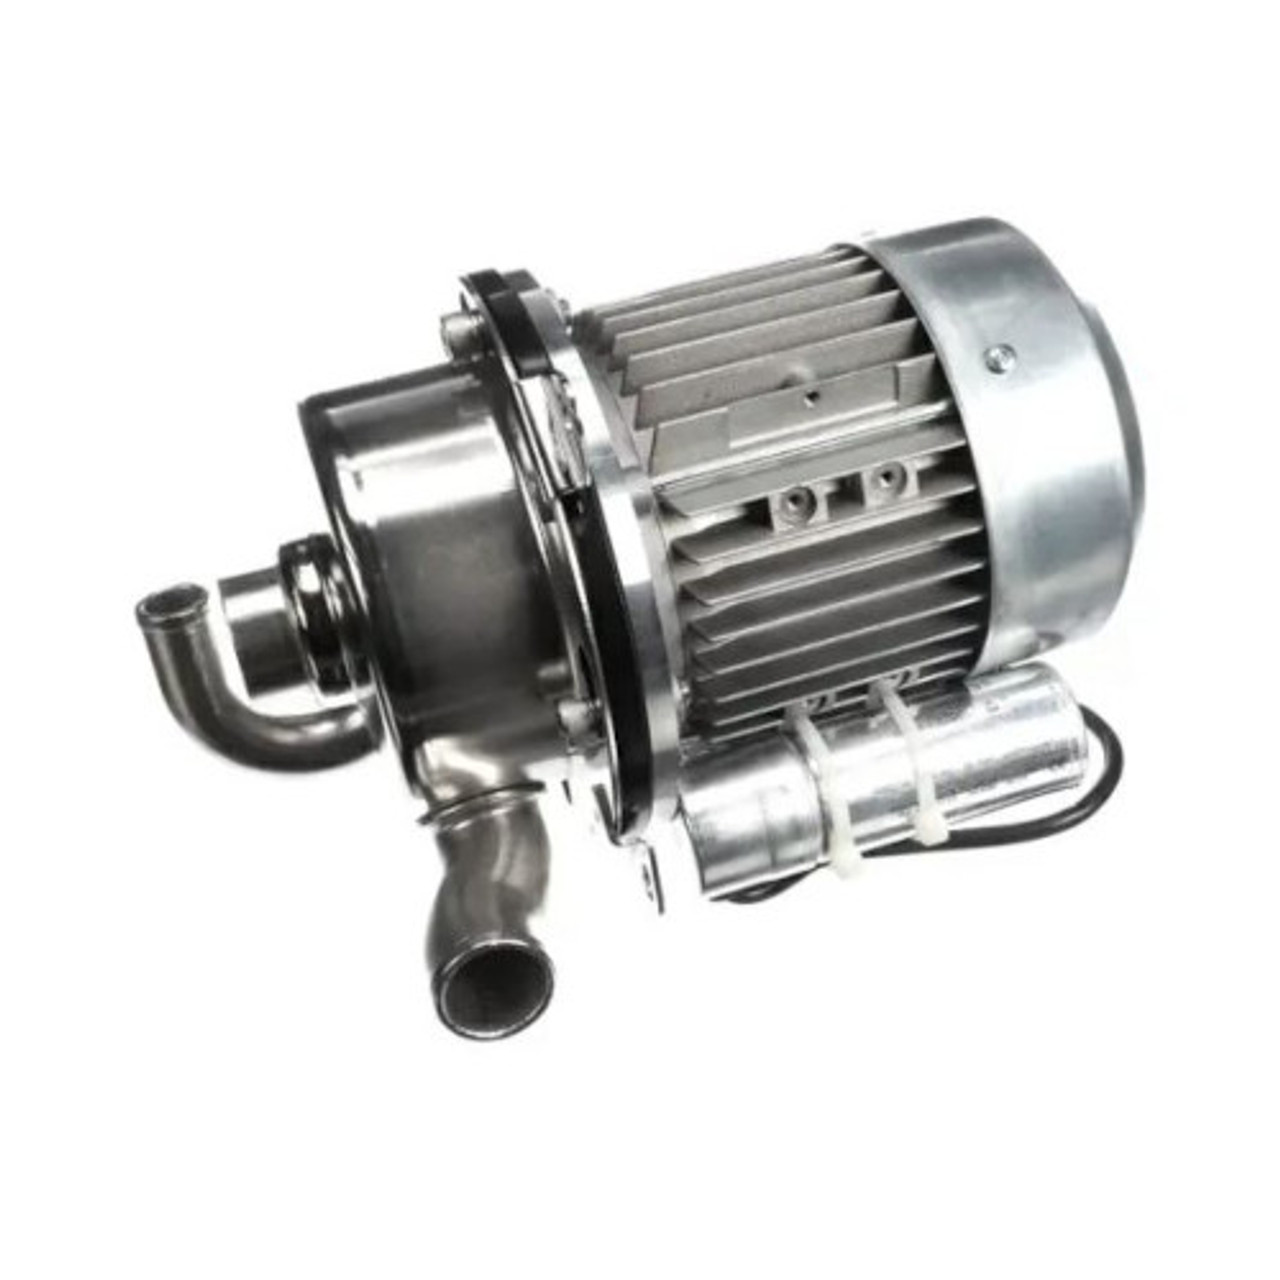 Jackson JAC6105-004-35-22 - Motor Pump 1 Hp 115/230V 60